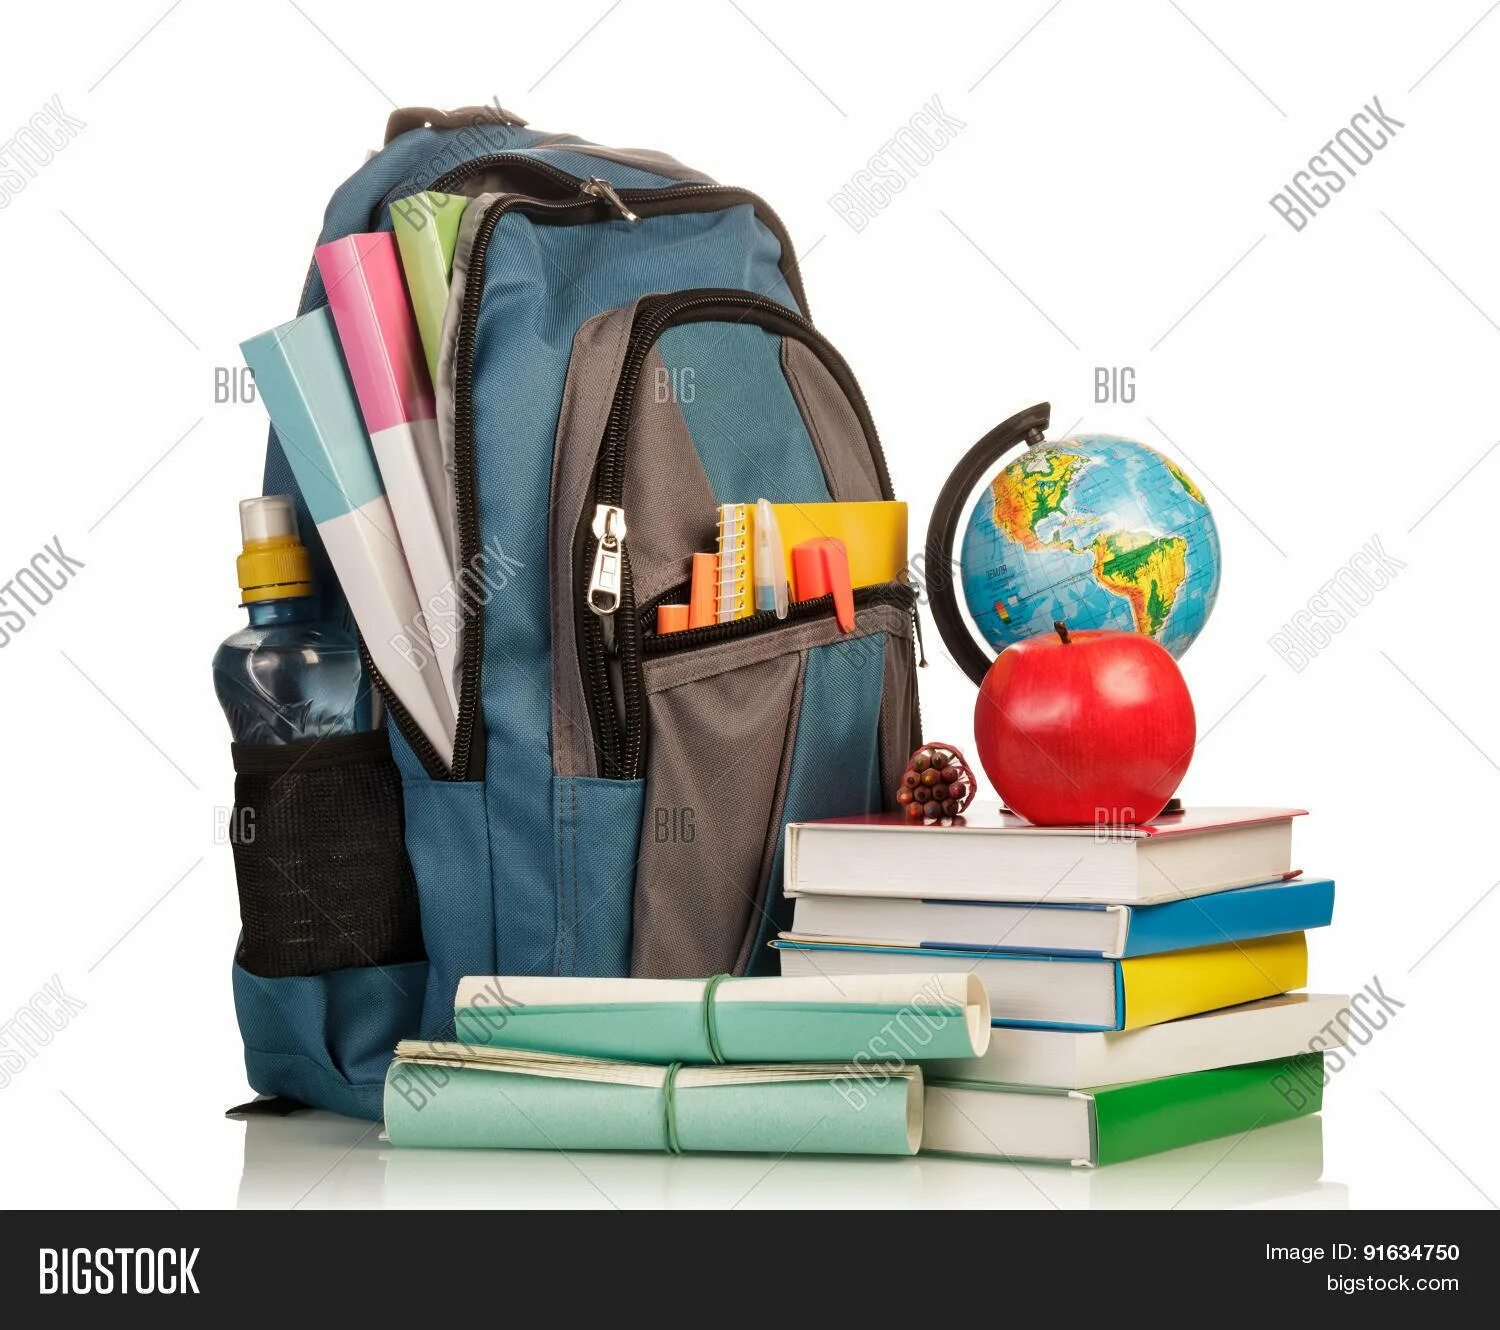 Рюкзак со школьными принадлежностями. Школьник с рюкзаком. Школьный рюкзак с учебниками. Портфель с канцтоварами.